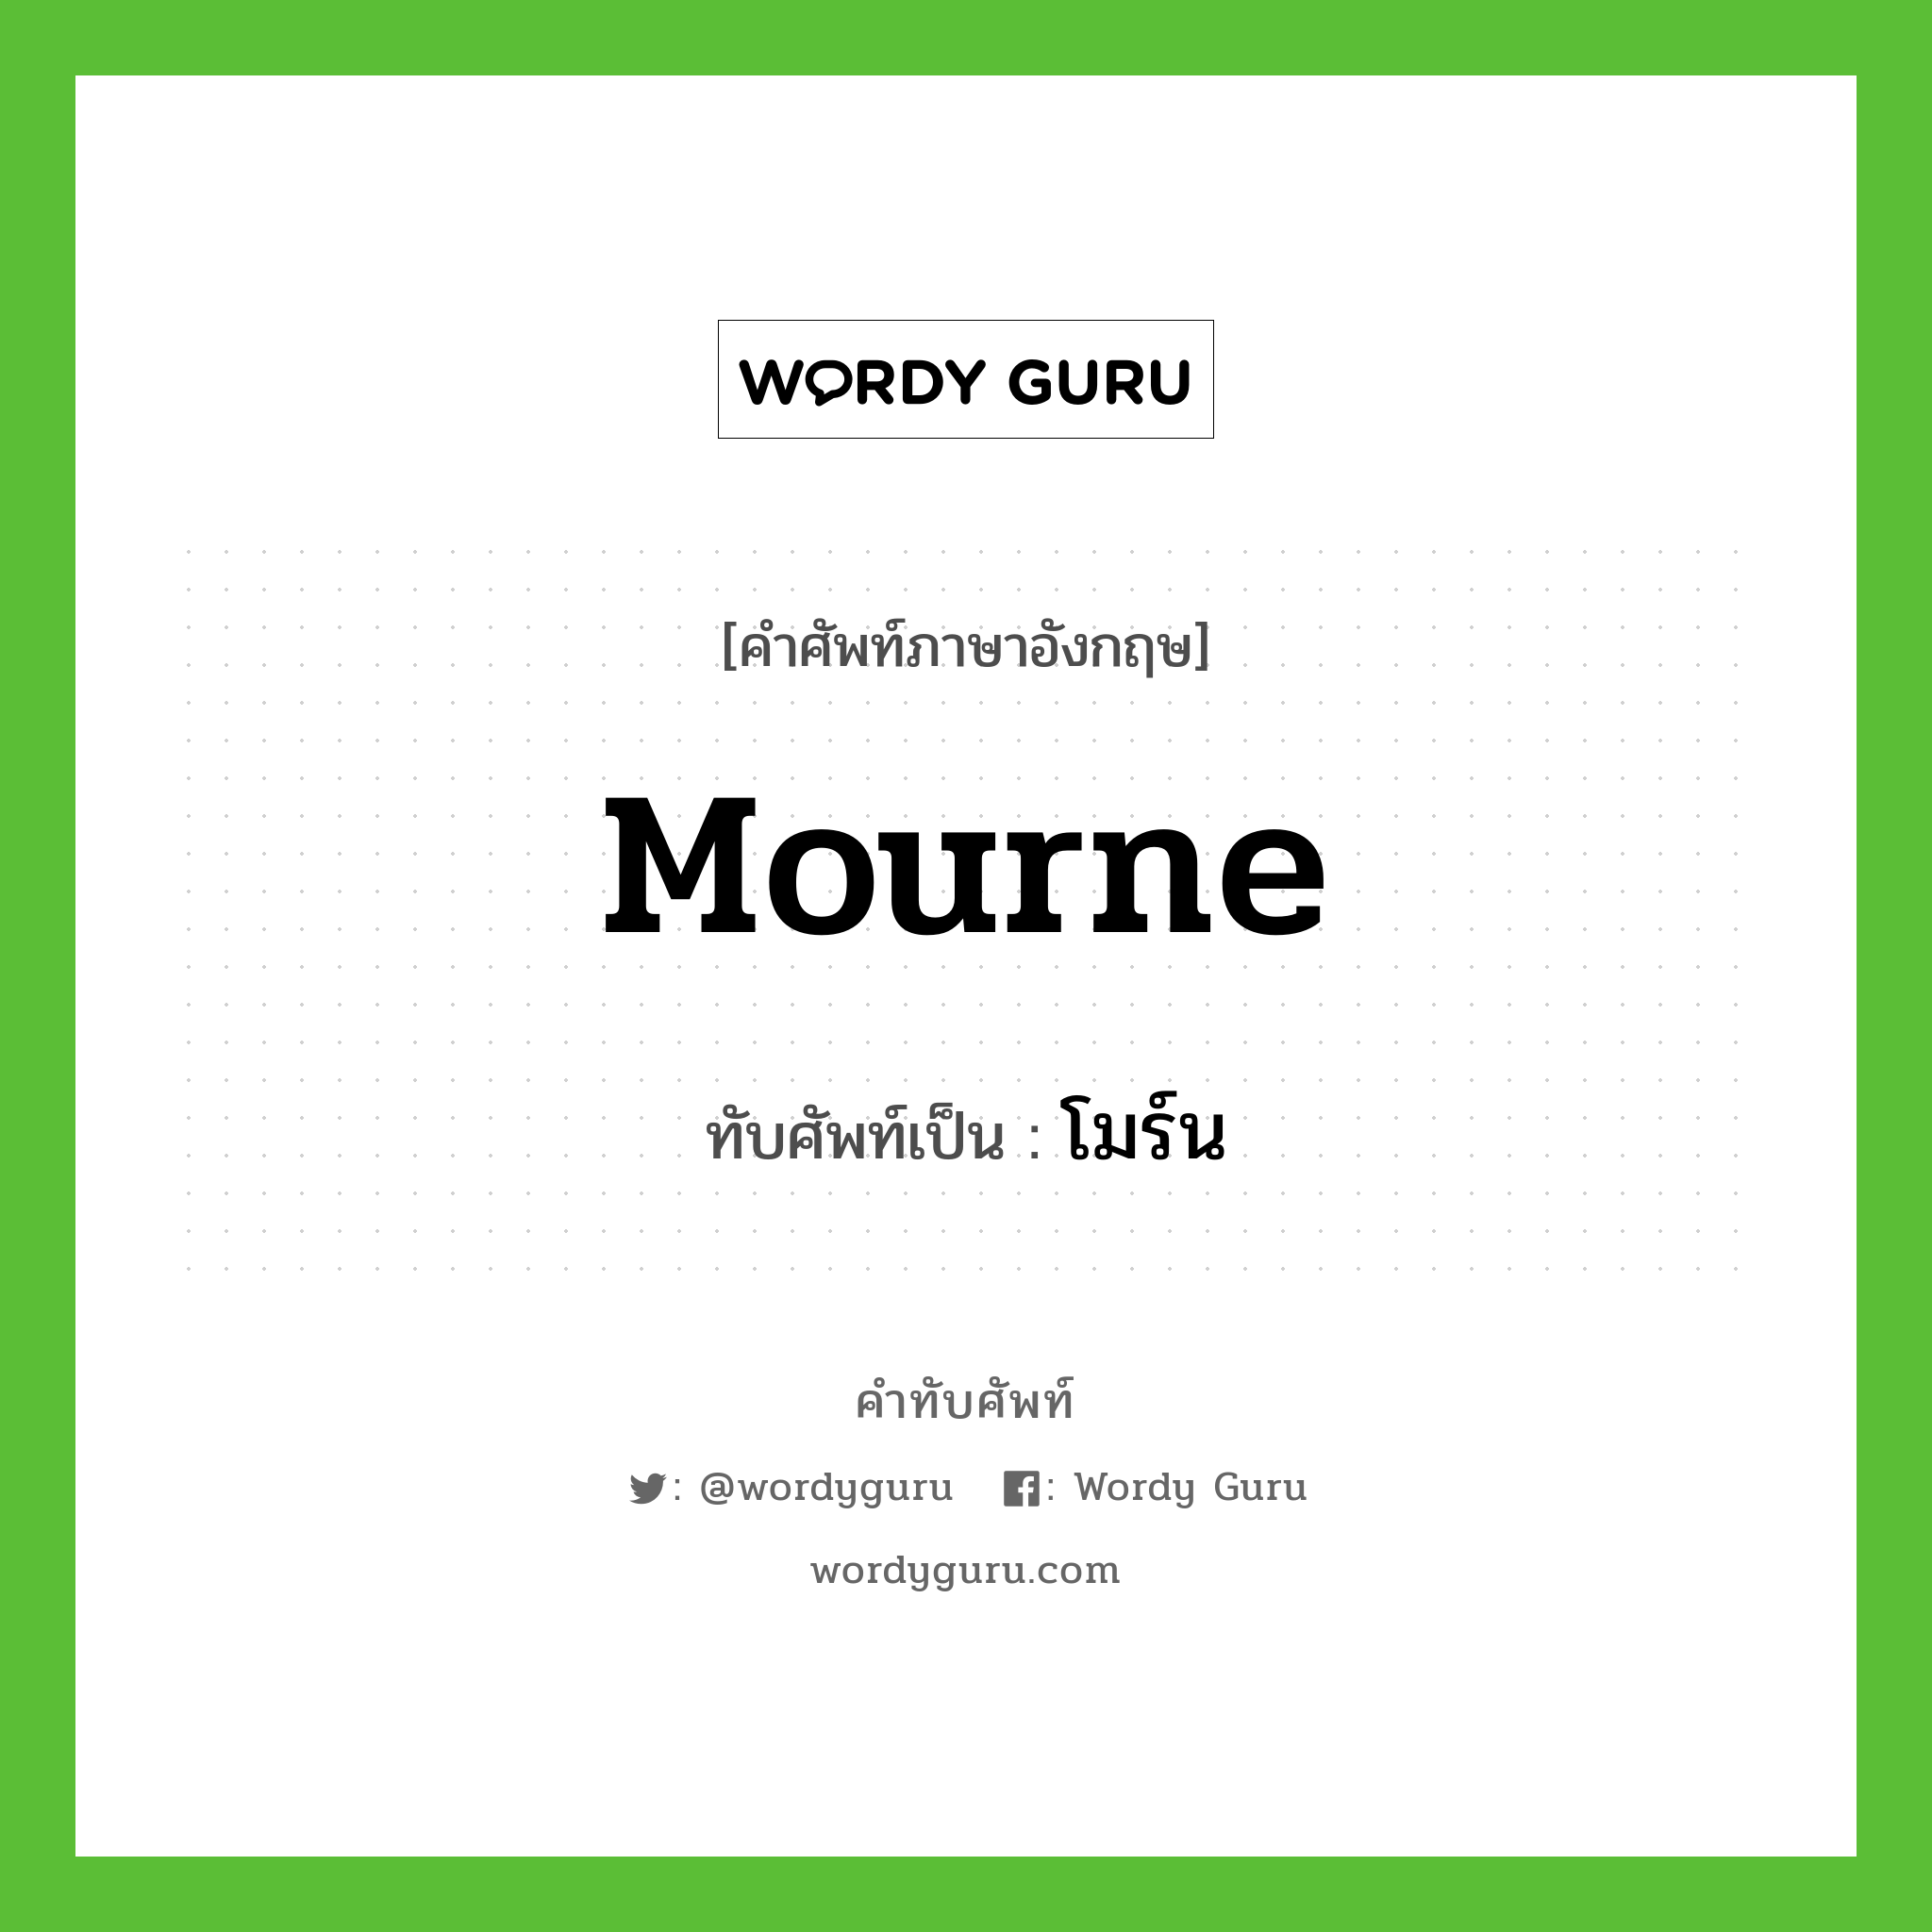 Mourne เขียนเป็นคำไทยว่าอะไร?, คำศัพท์ภาษาอังกฤษ Mourne ทับศัพท์เป็น โมร์น